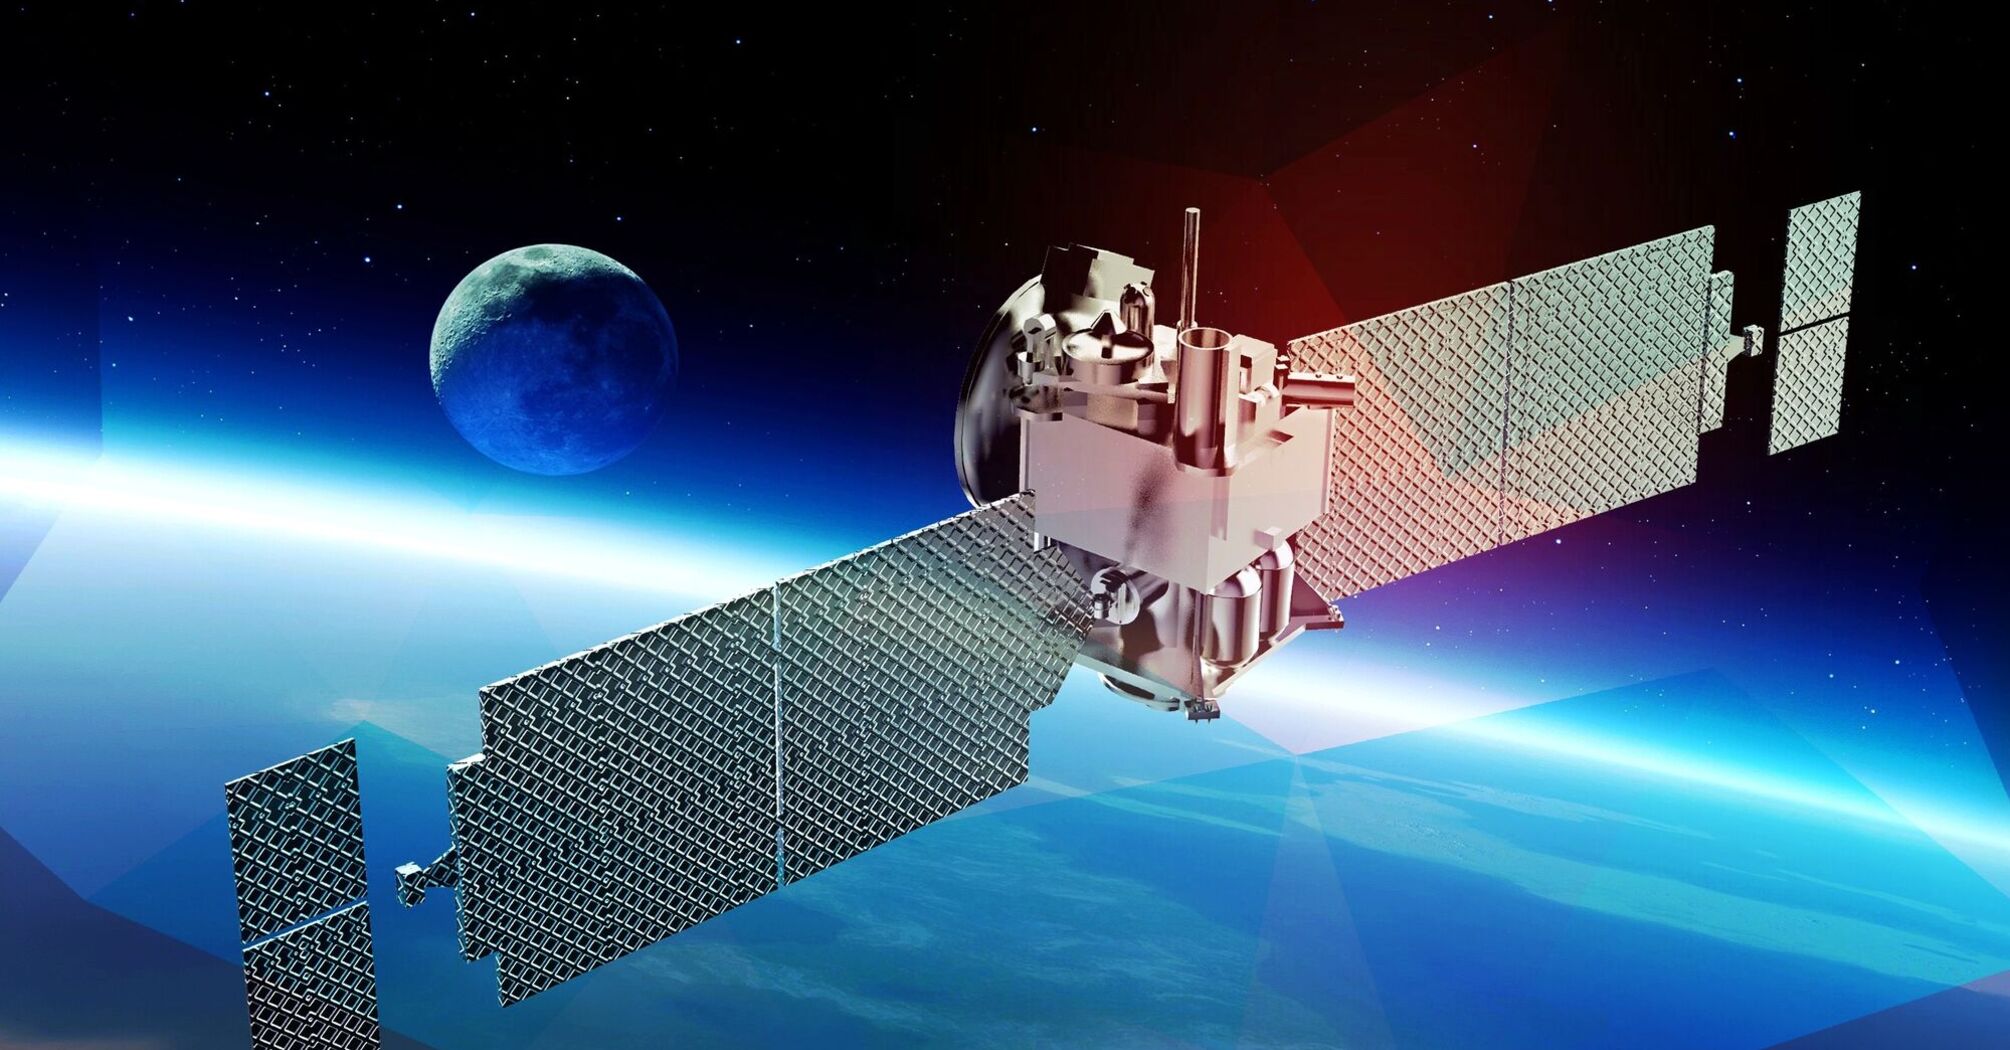 Space satellite in near-Earth orbit